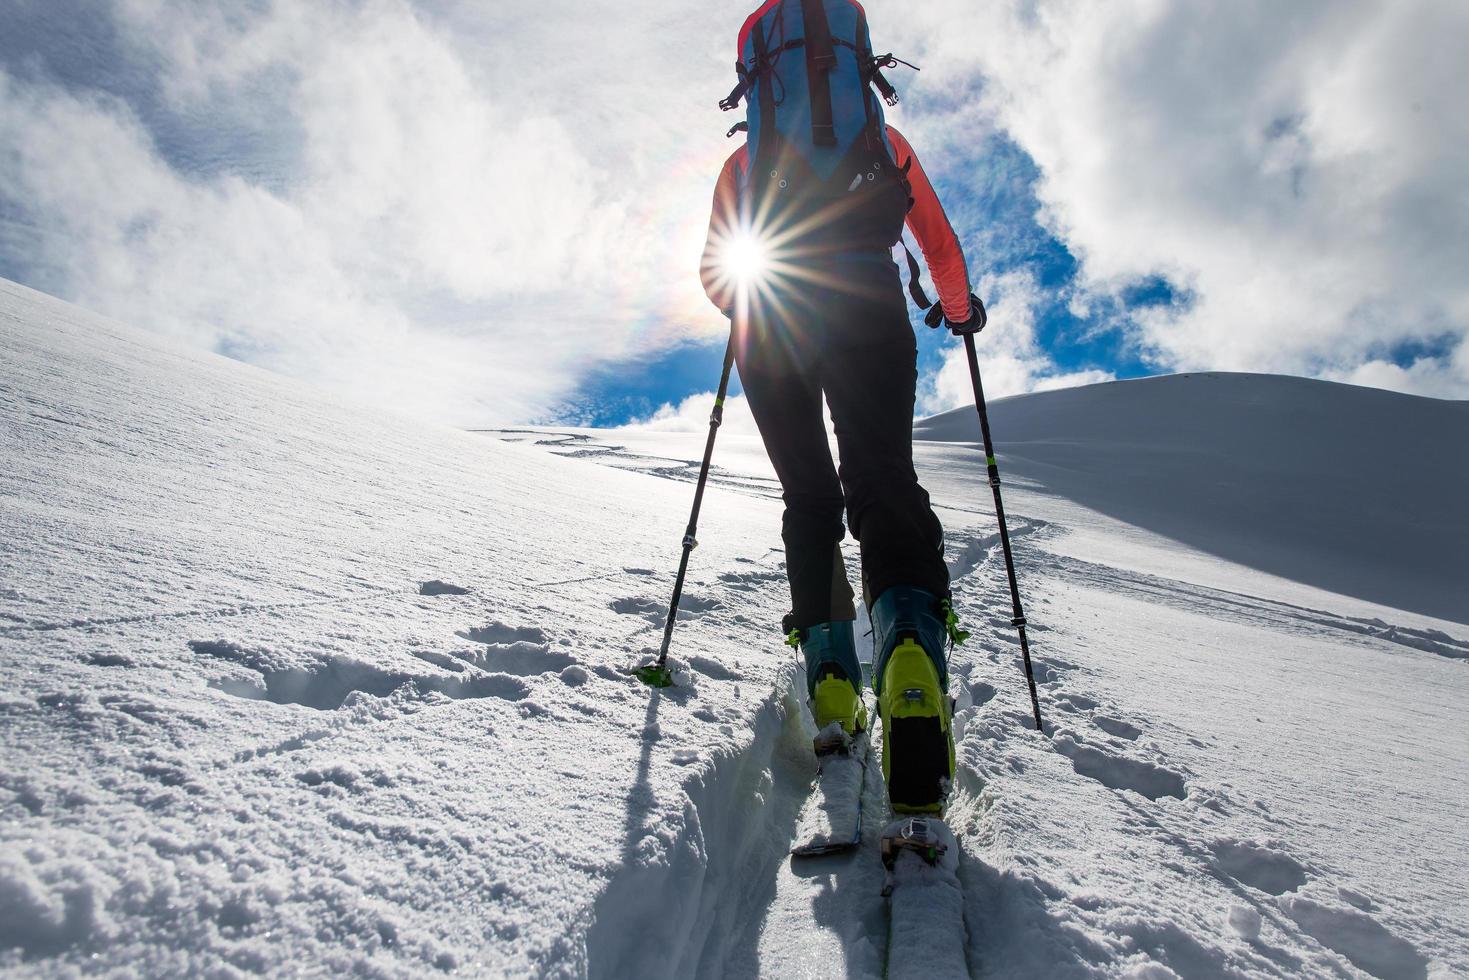 meisje bergbeklimmer klim op ski's en zeehondenhuiden foto